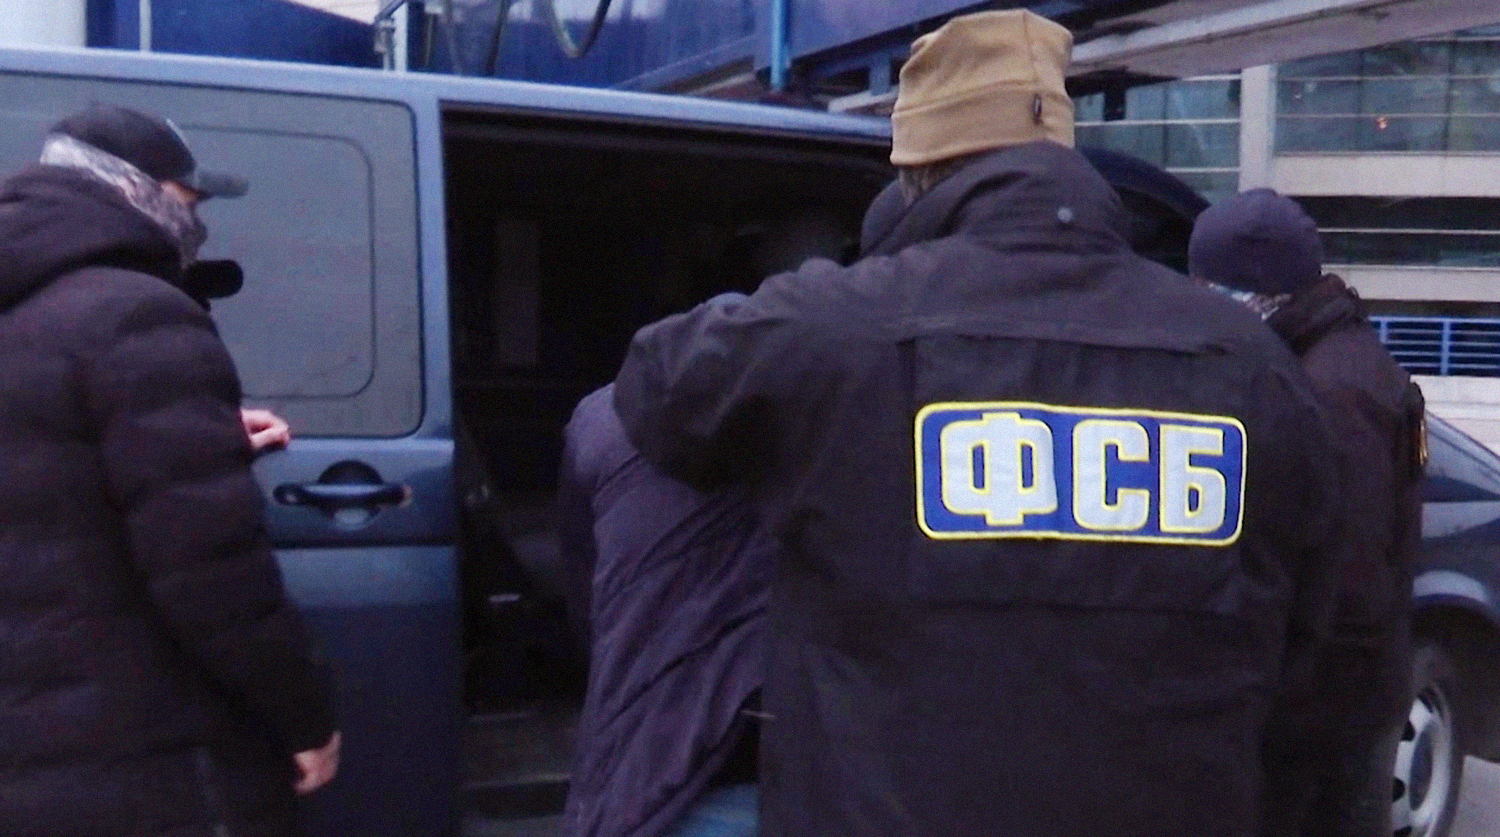 ФСБ задержала бывшего мэра Челябинска